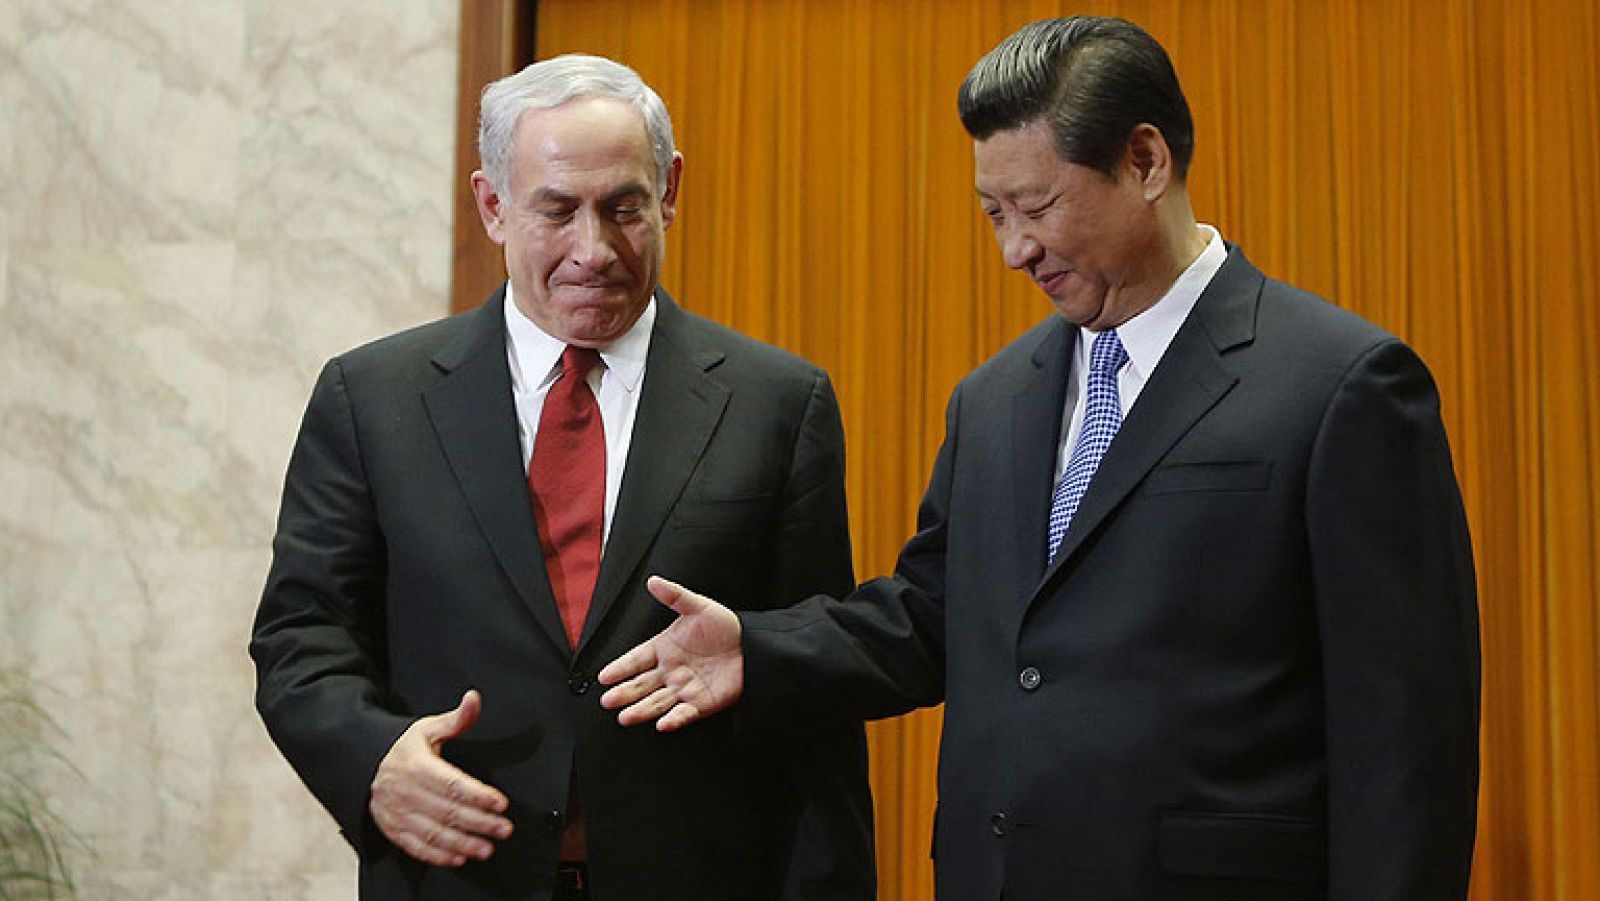 El Gobierno chino se ha mostrado dispuesto a trabajar con la comunidad internacional para llevar a cabo trabajos de mediación en el proceso de paz en Oriente Medio, después de haber recibido esta semana al primer ministro de Israel, Benjamin Netanhayu, y al presidente palestino Mahmud Abás.